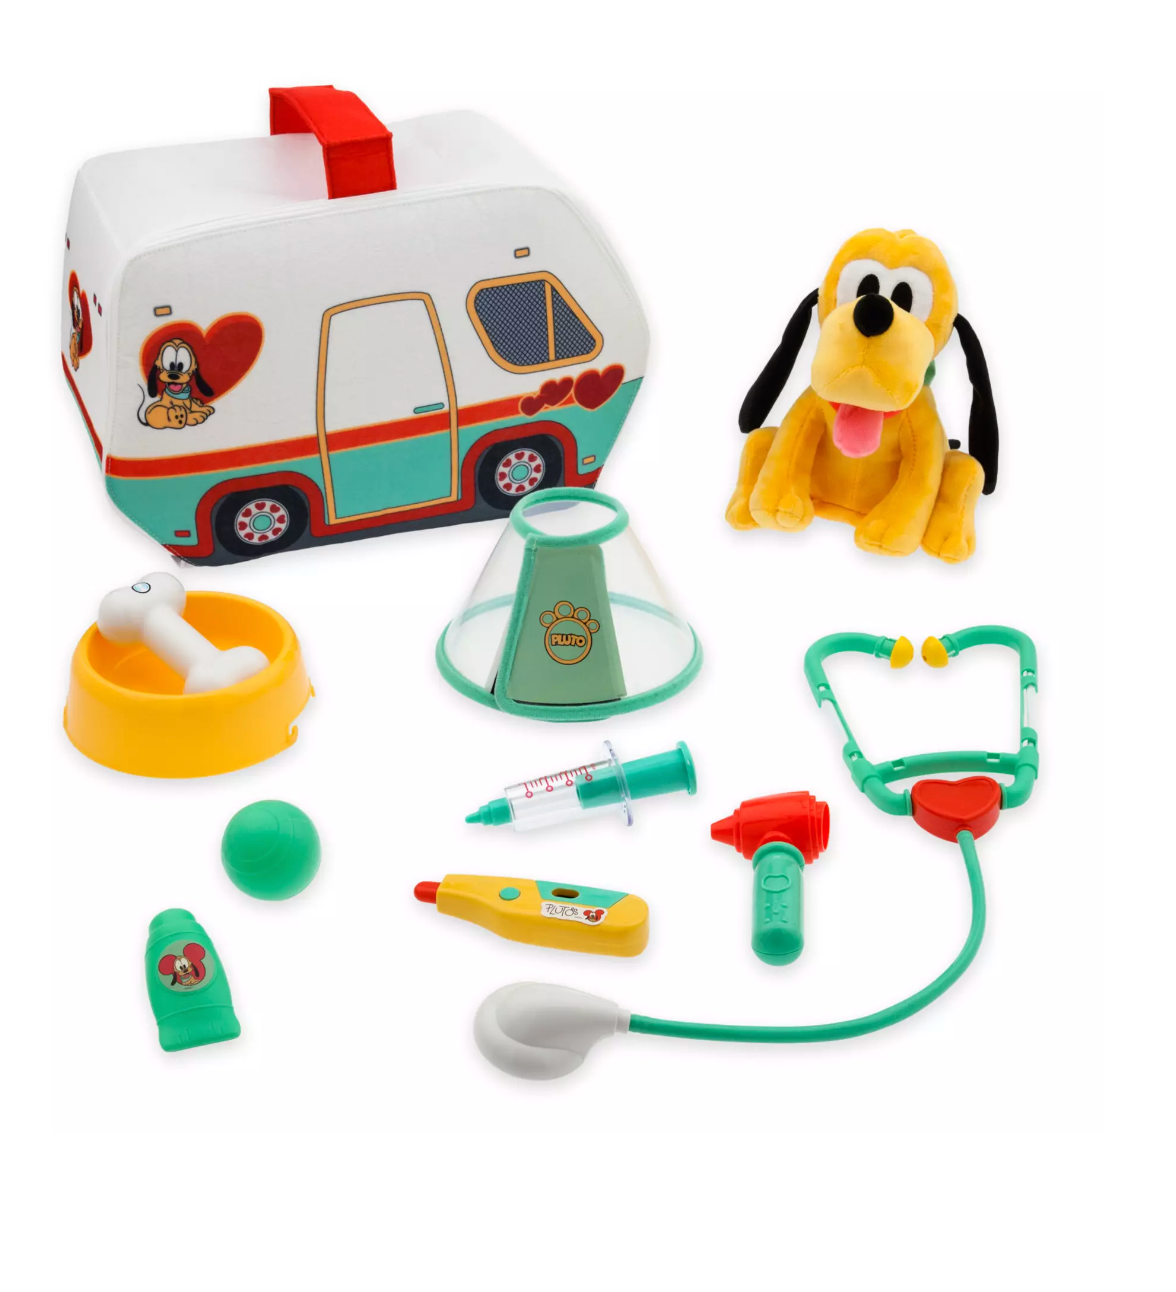 Disney Junior Pluto Vet Set Toy New with Box